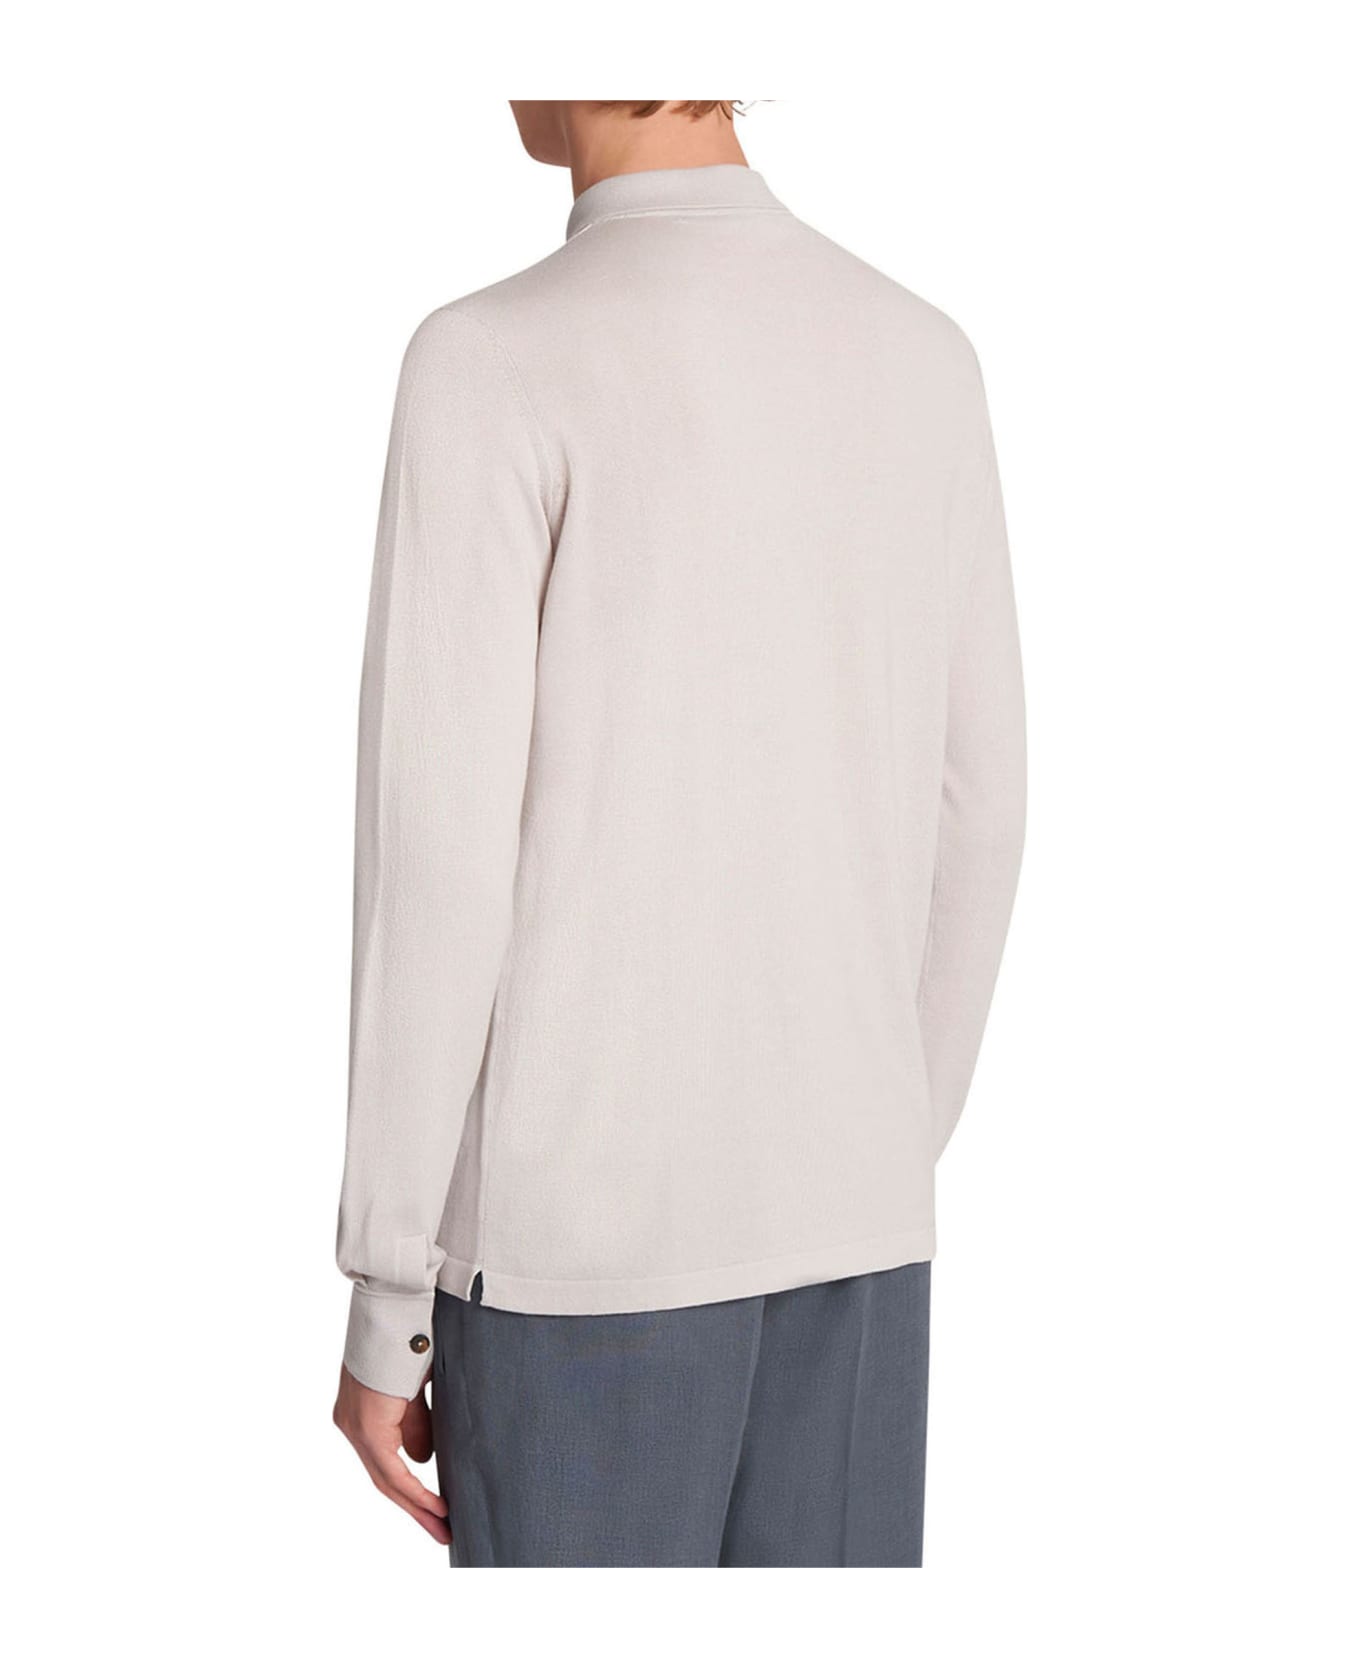 Kiton Jersey Poloshirt L/s Cotton - ICE/MILKWHITE